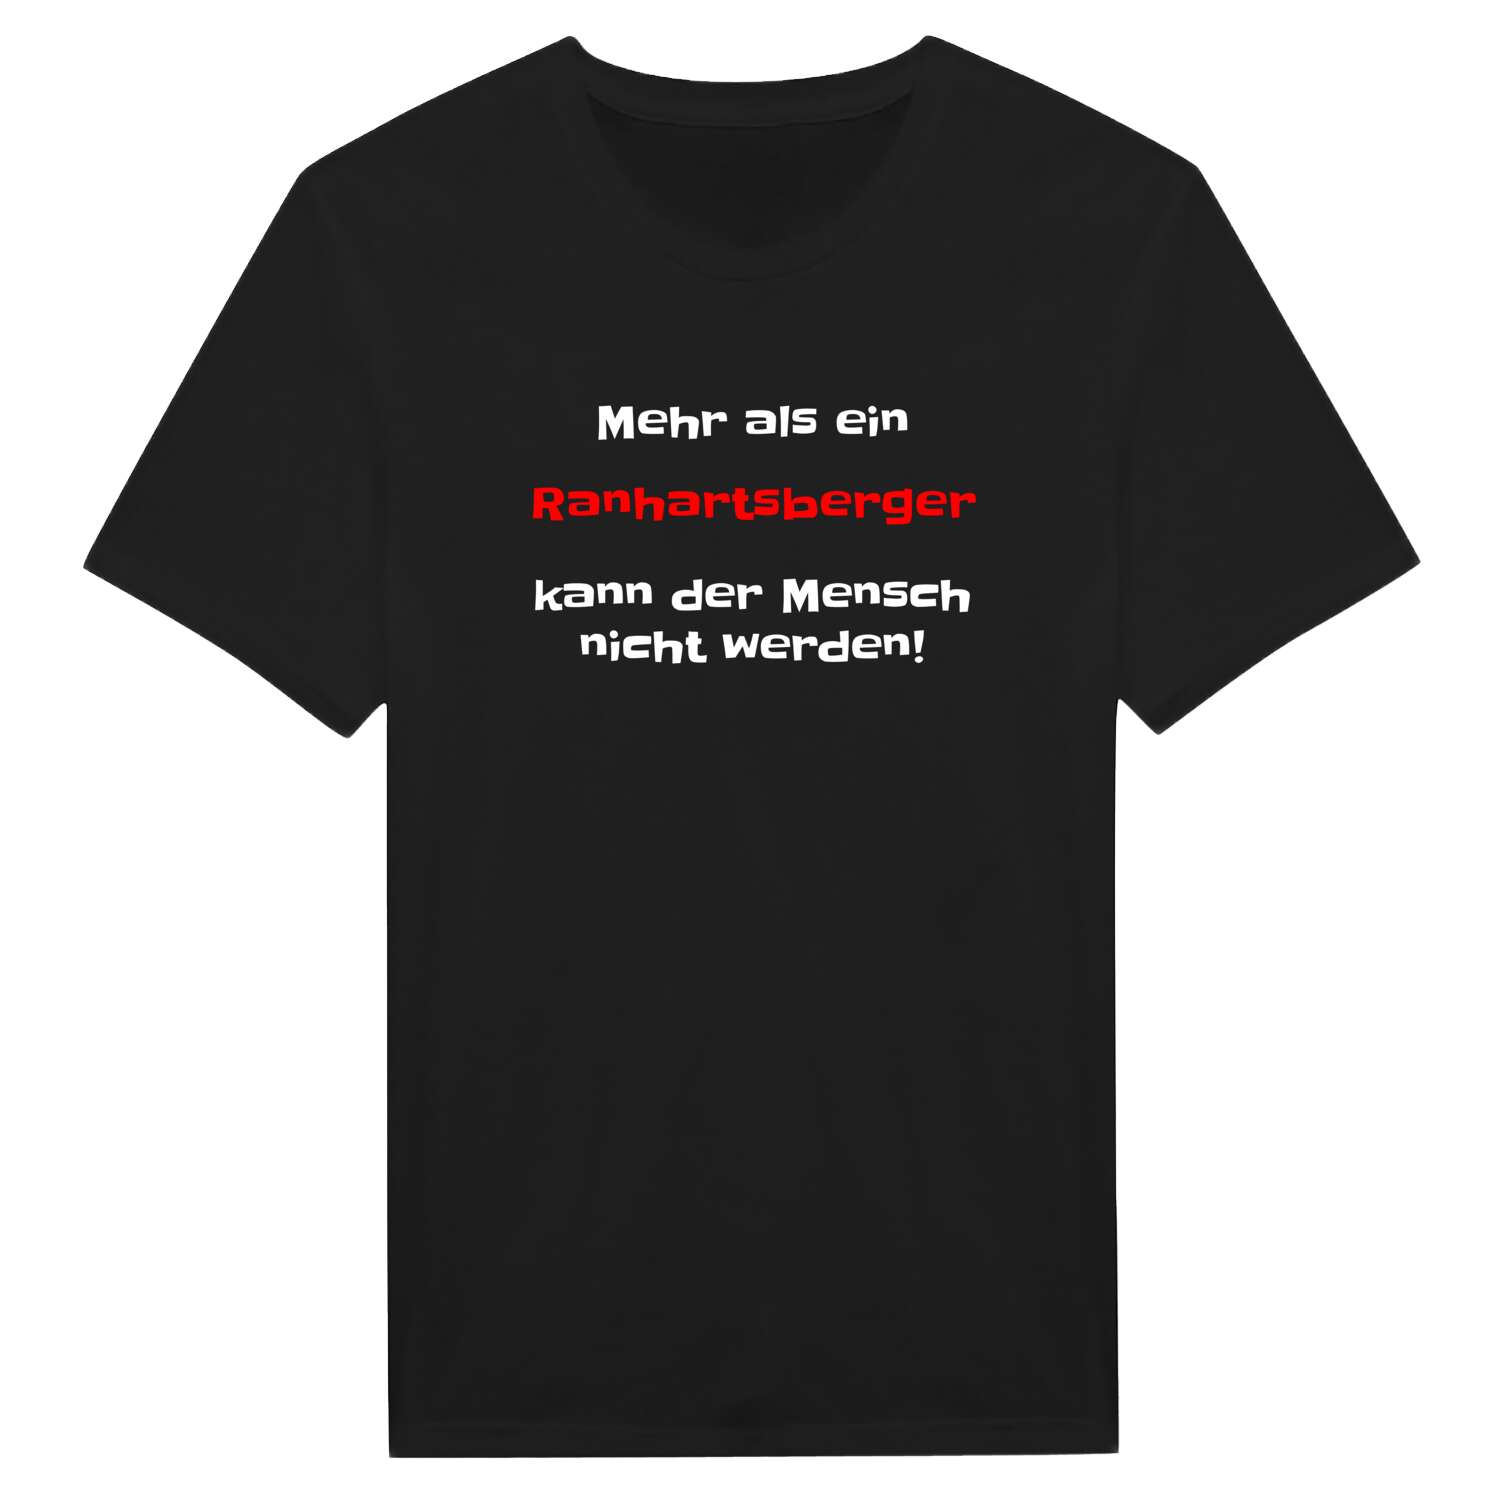 Ranhartsberg T-Shirt »Mehr als ein«